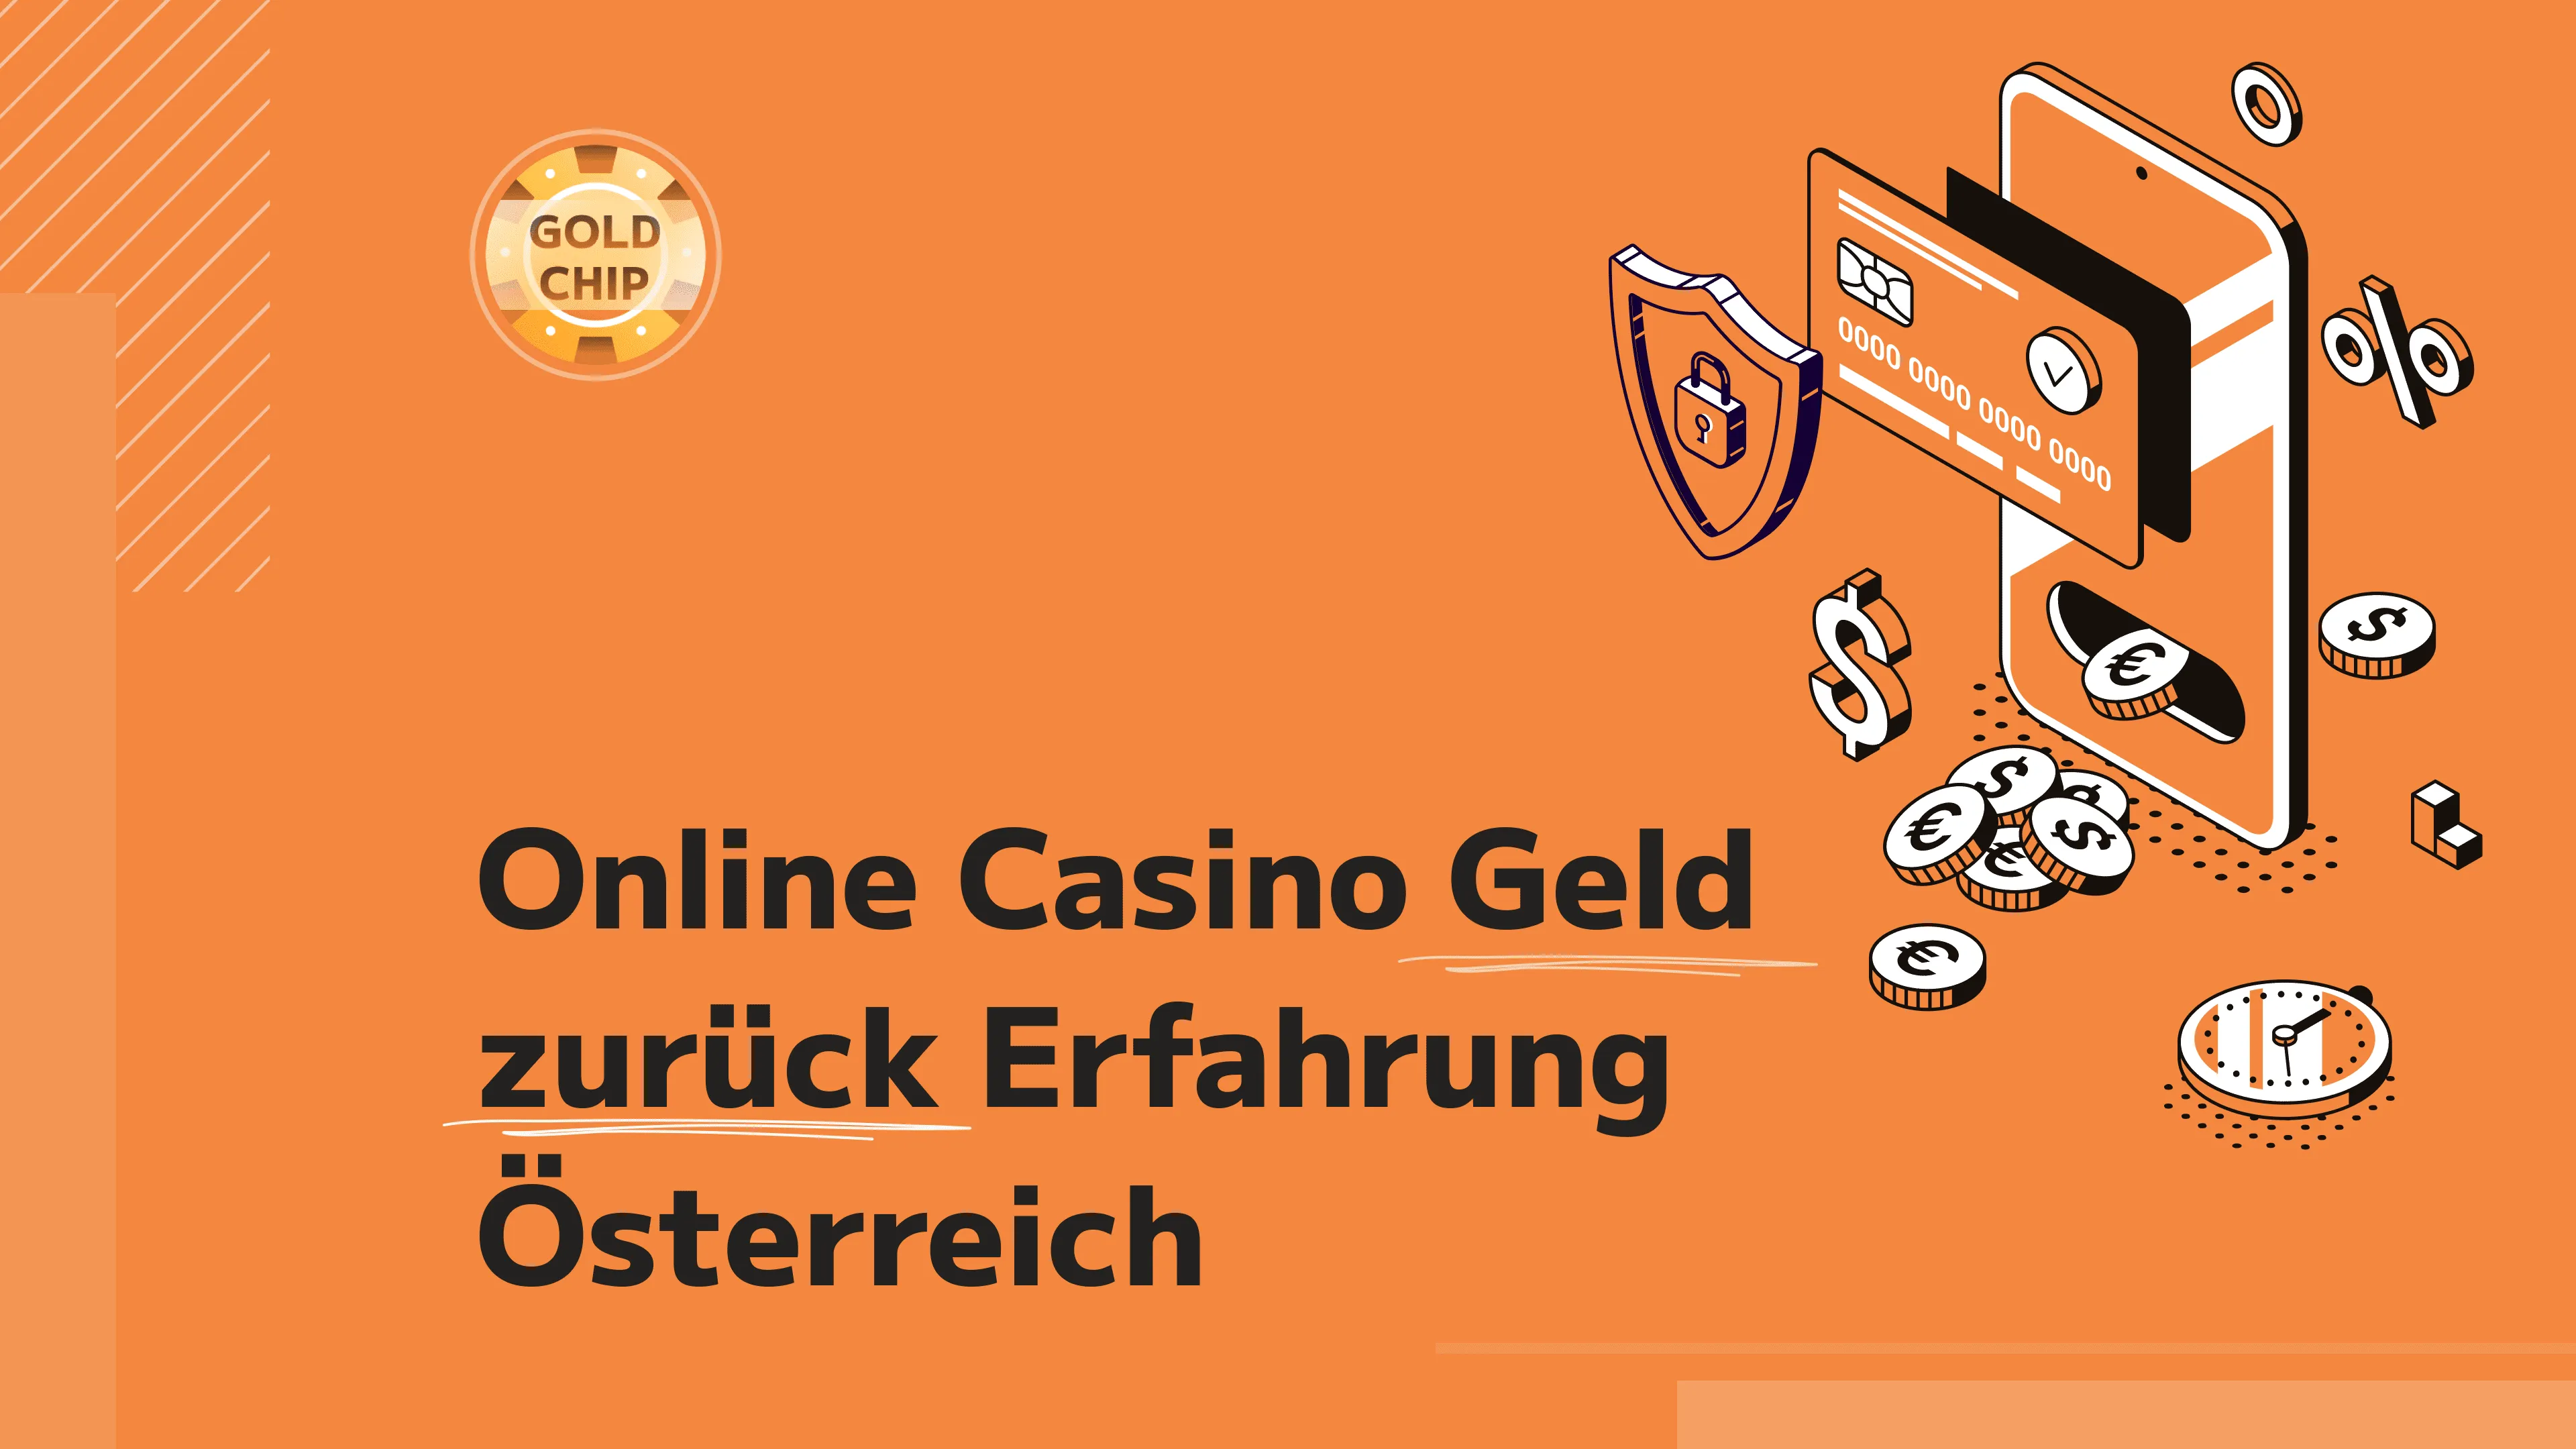 Umfrage: Wie viel verdienen Sie mit Online Casino?